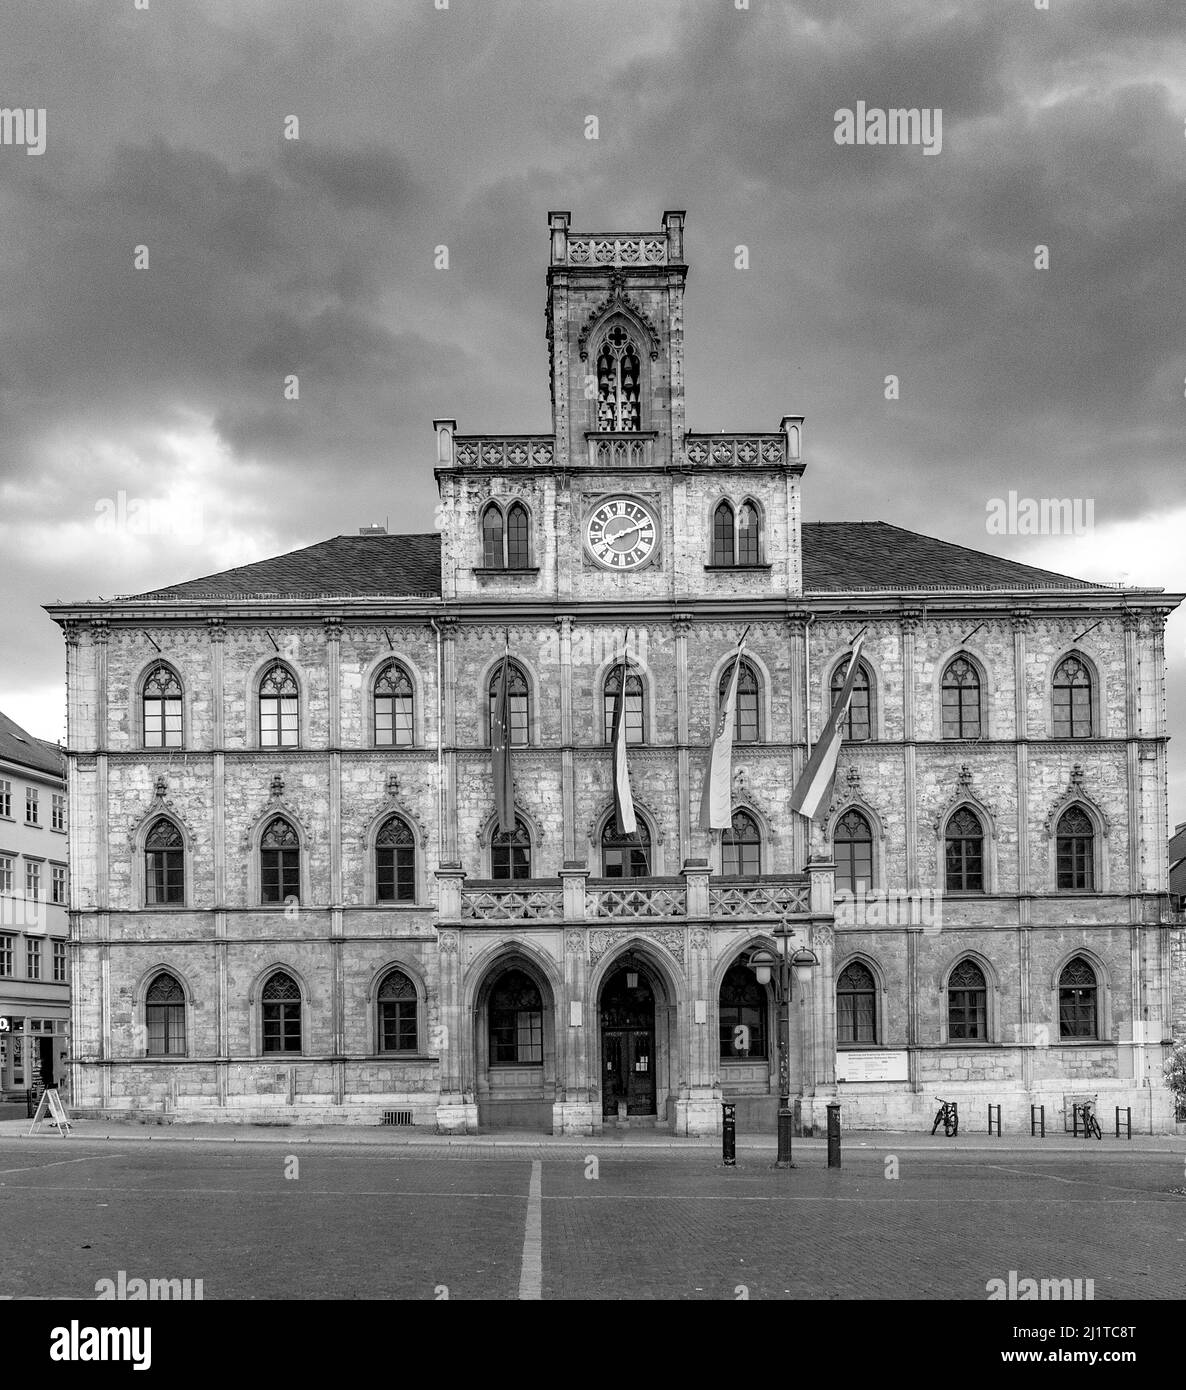 Célèbre hôtel de ville de Weimar, Allemagne en noir et blanc Banque D'Images